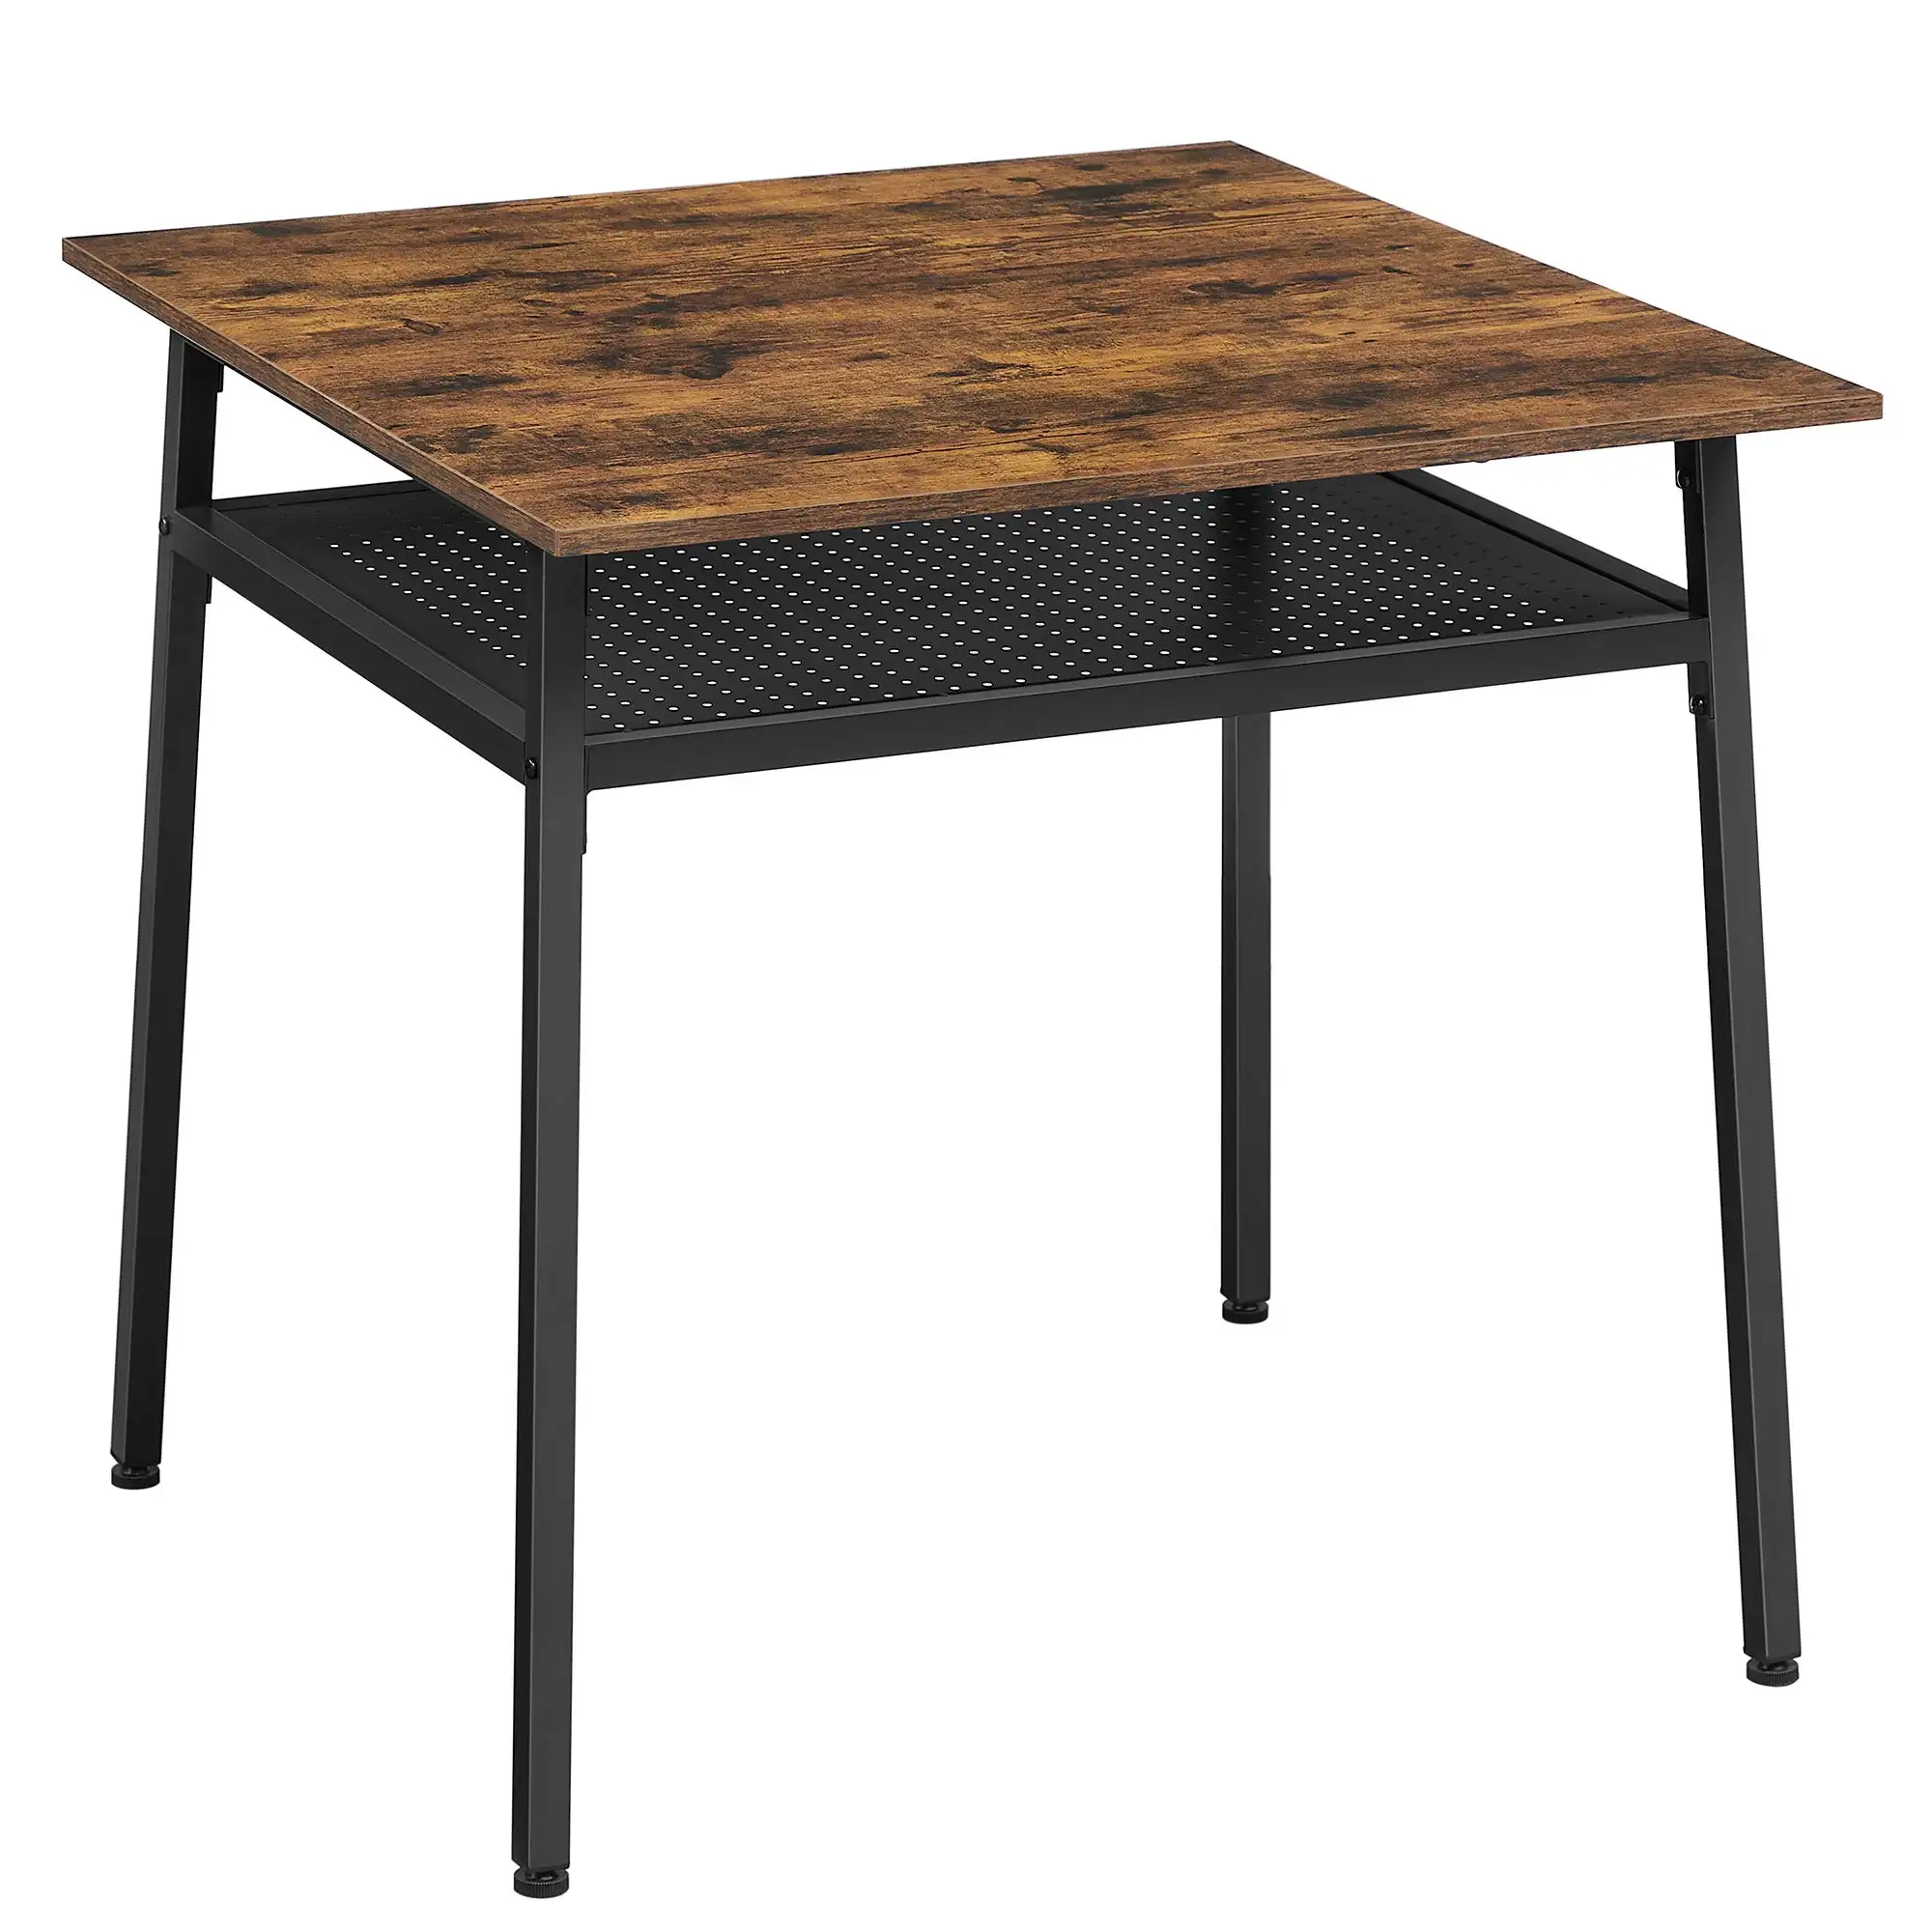 Недорогая промышленная другая мебель для столовой обеденные столы квадратная кухня деревянный стол с отсеком для хранения